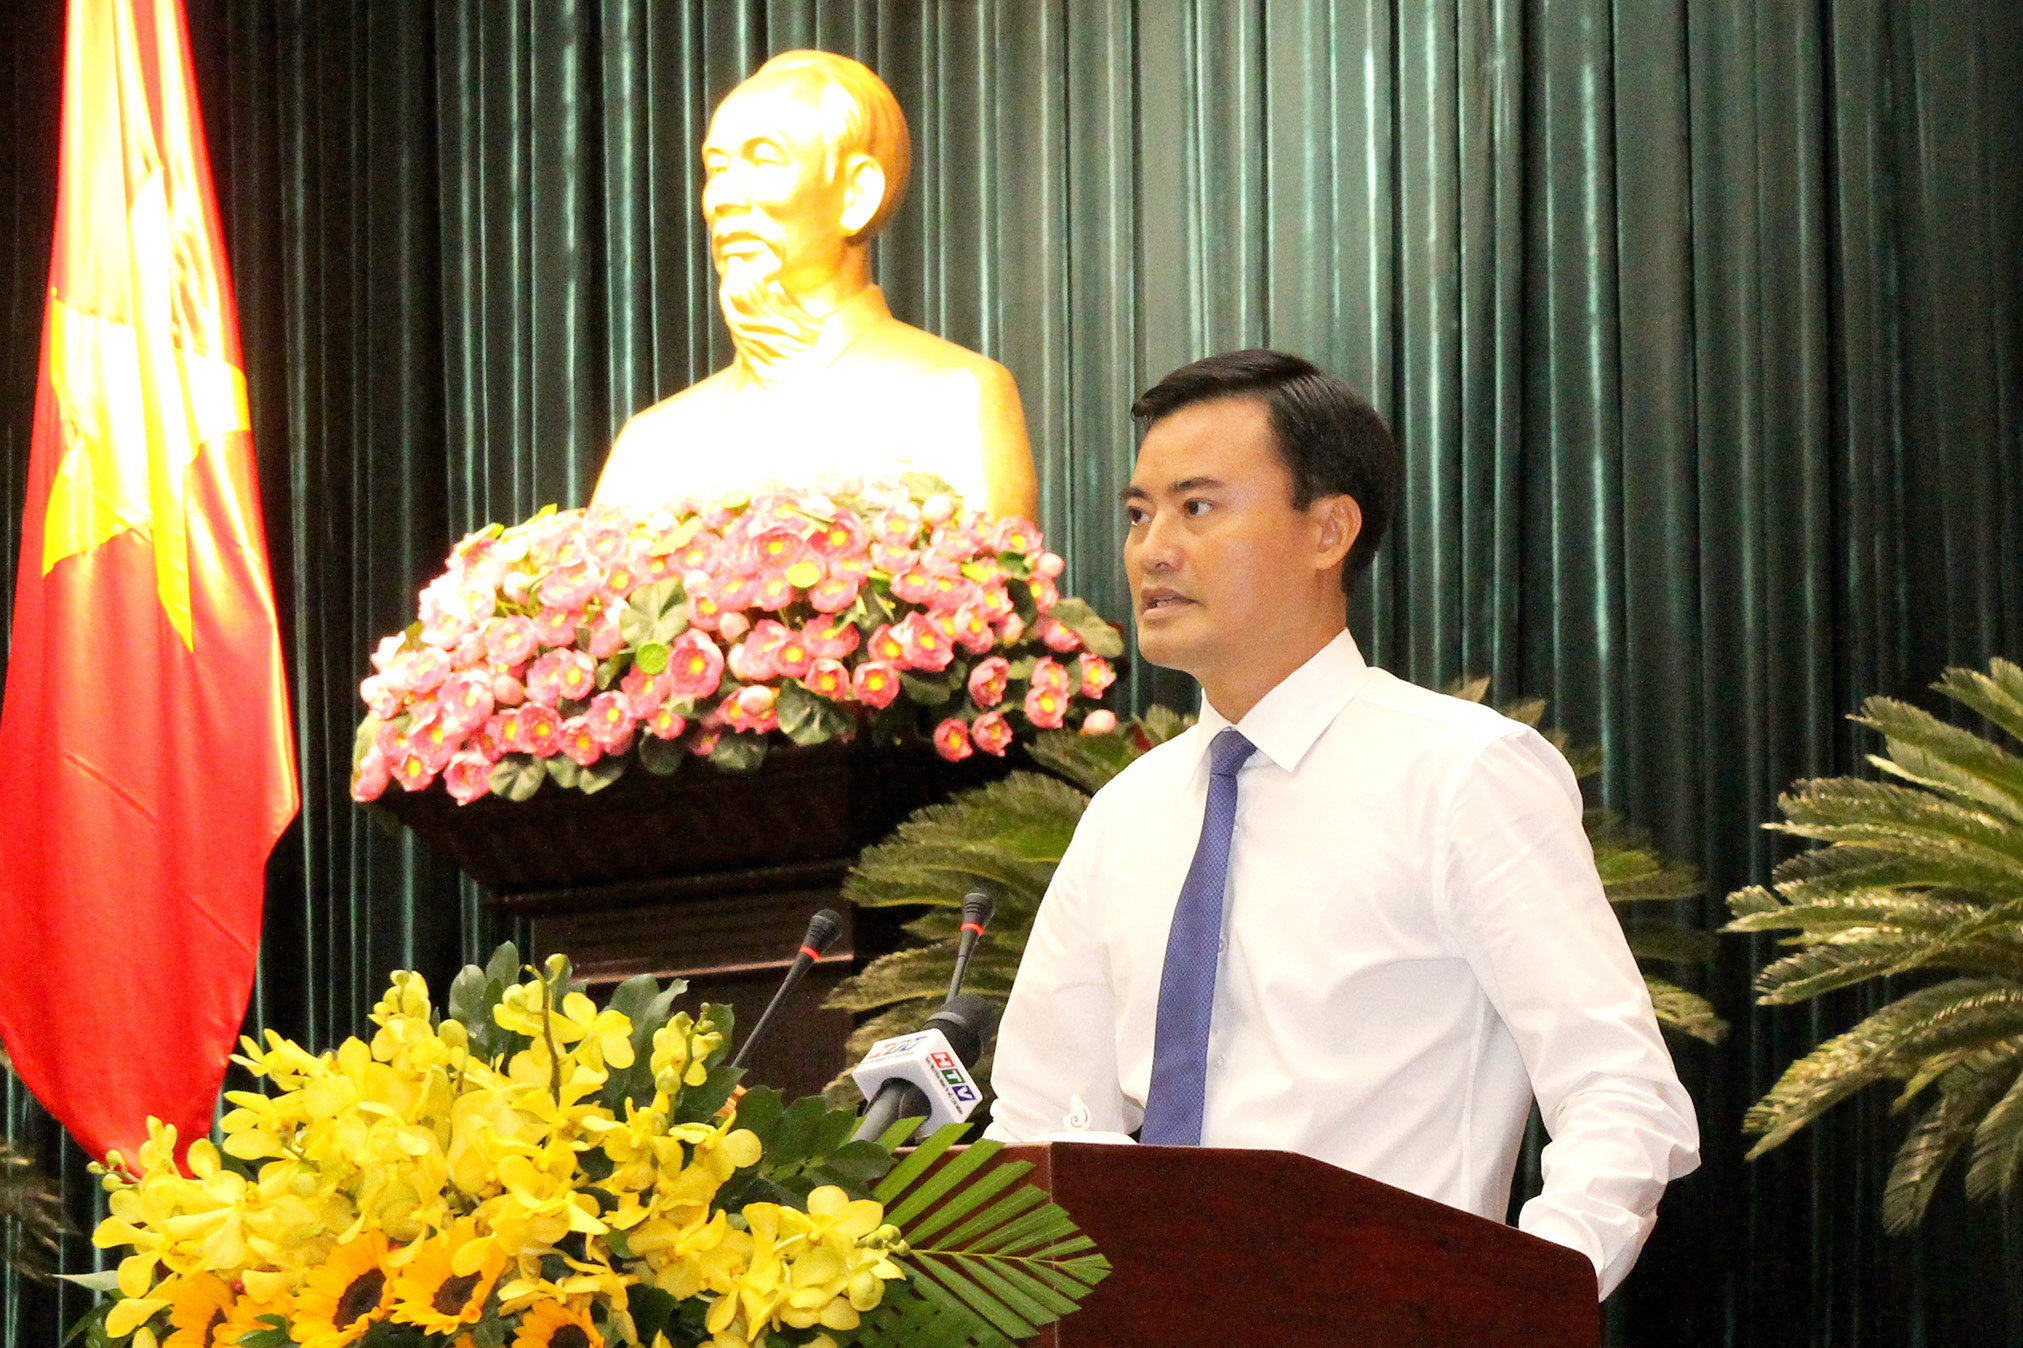 Đồng chí Bùi Xuân Cường trình phát biểu sau khi được bầu làm Phó Chủ tịch UBND TP. Hồ Chí Minh (Ảnh: H.Hào)